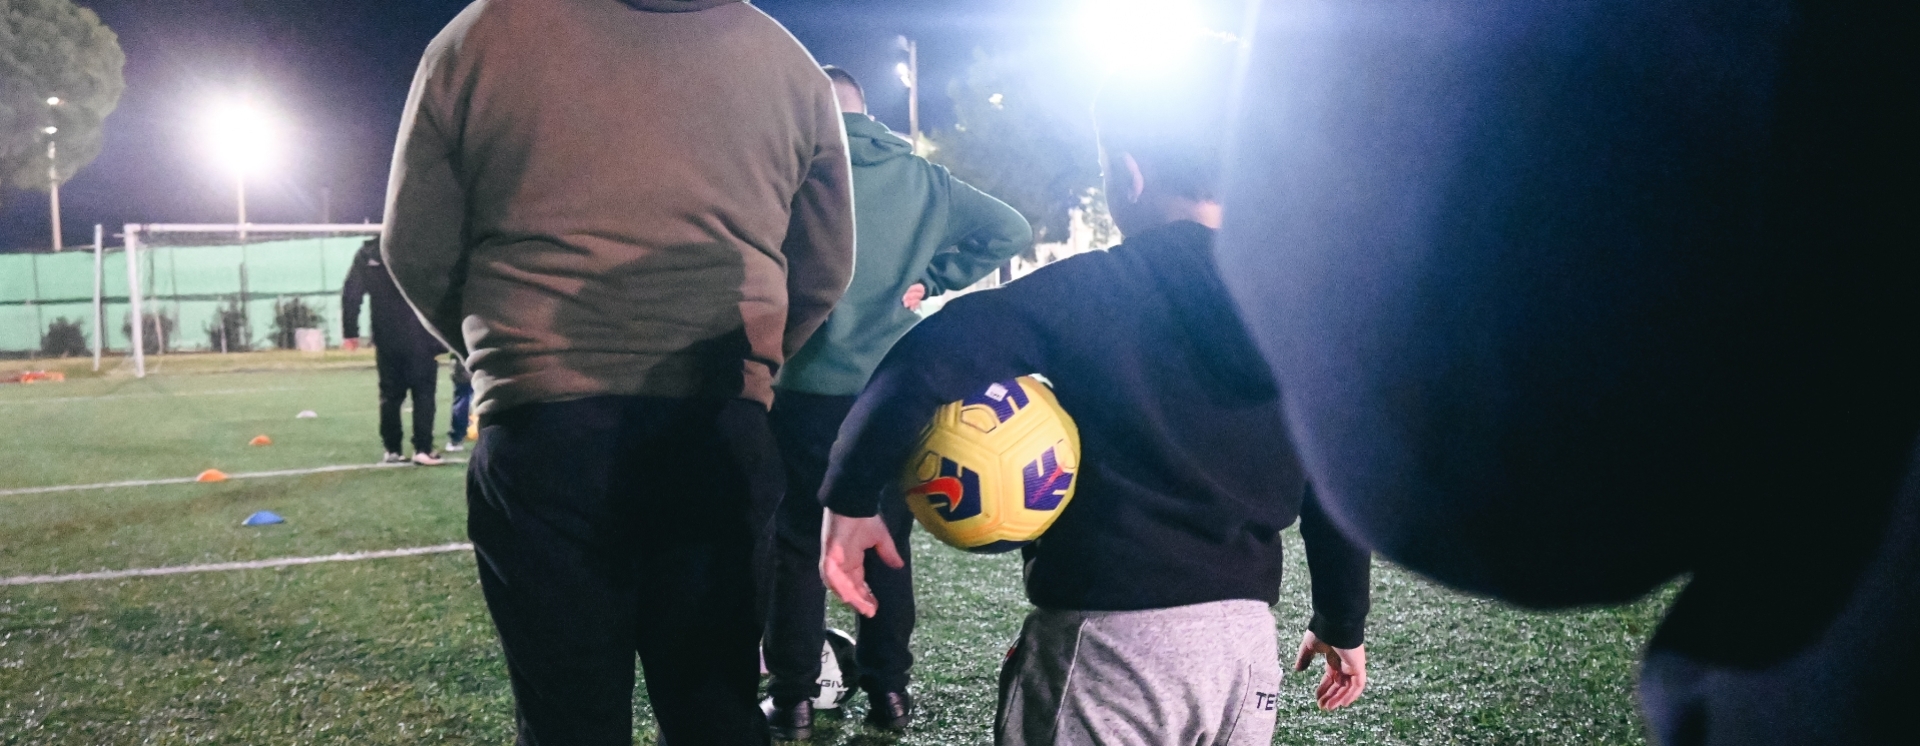 Στο Αγρίνιο μόλις δημιουργήθηκε το πρώτο ποδοσφαιρικό τμήμα για παιδιά με αυτισμό